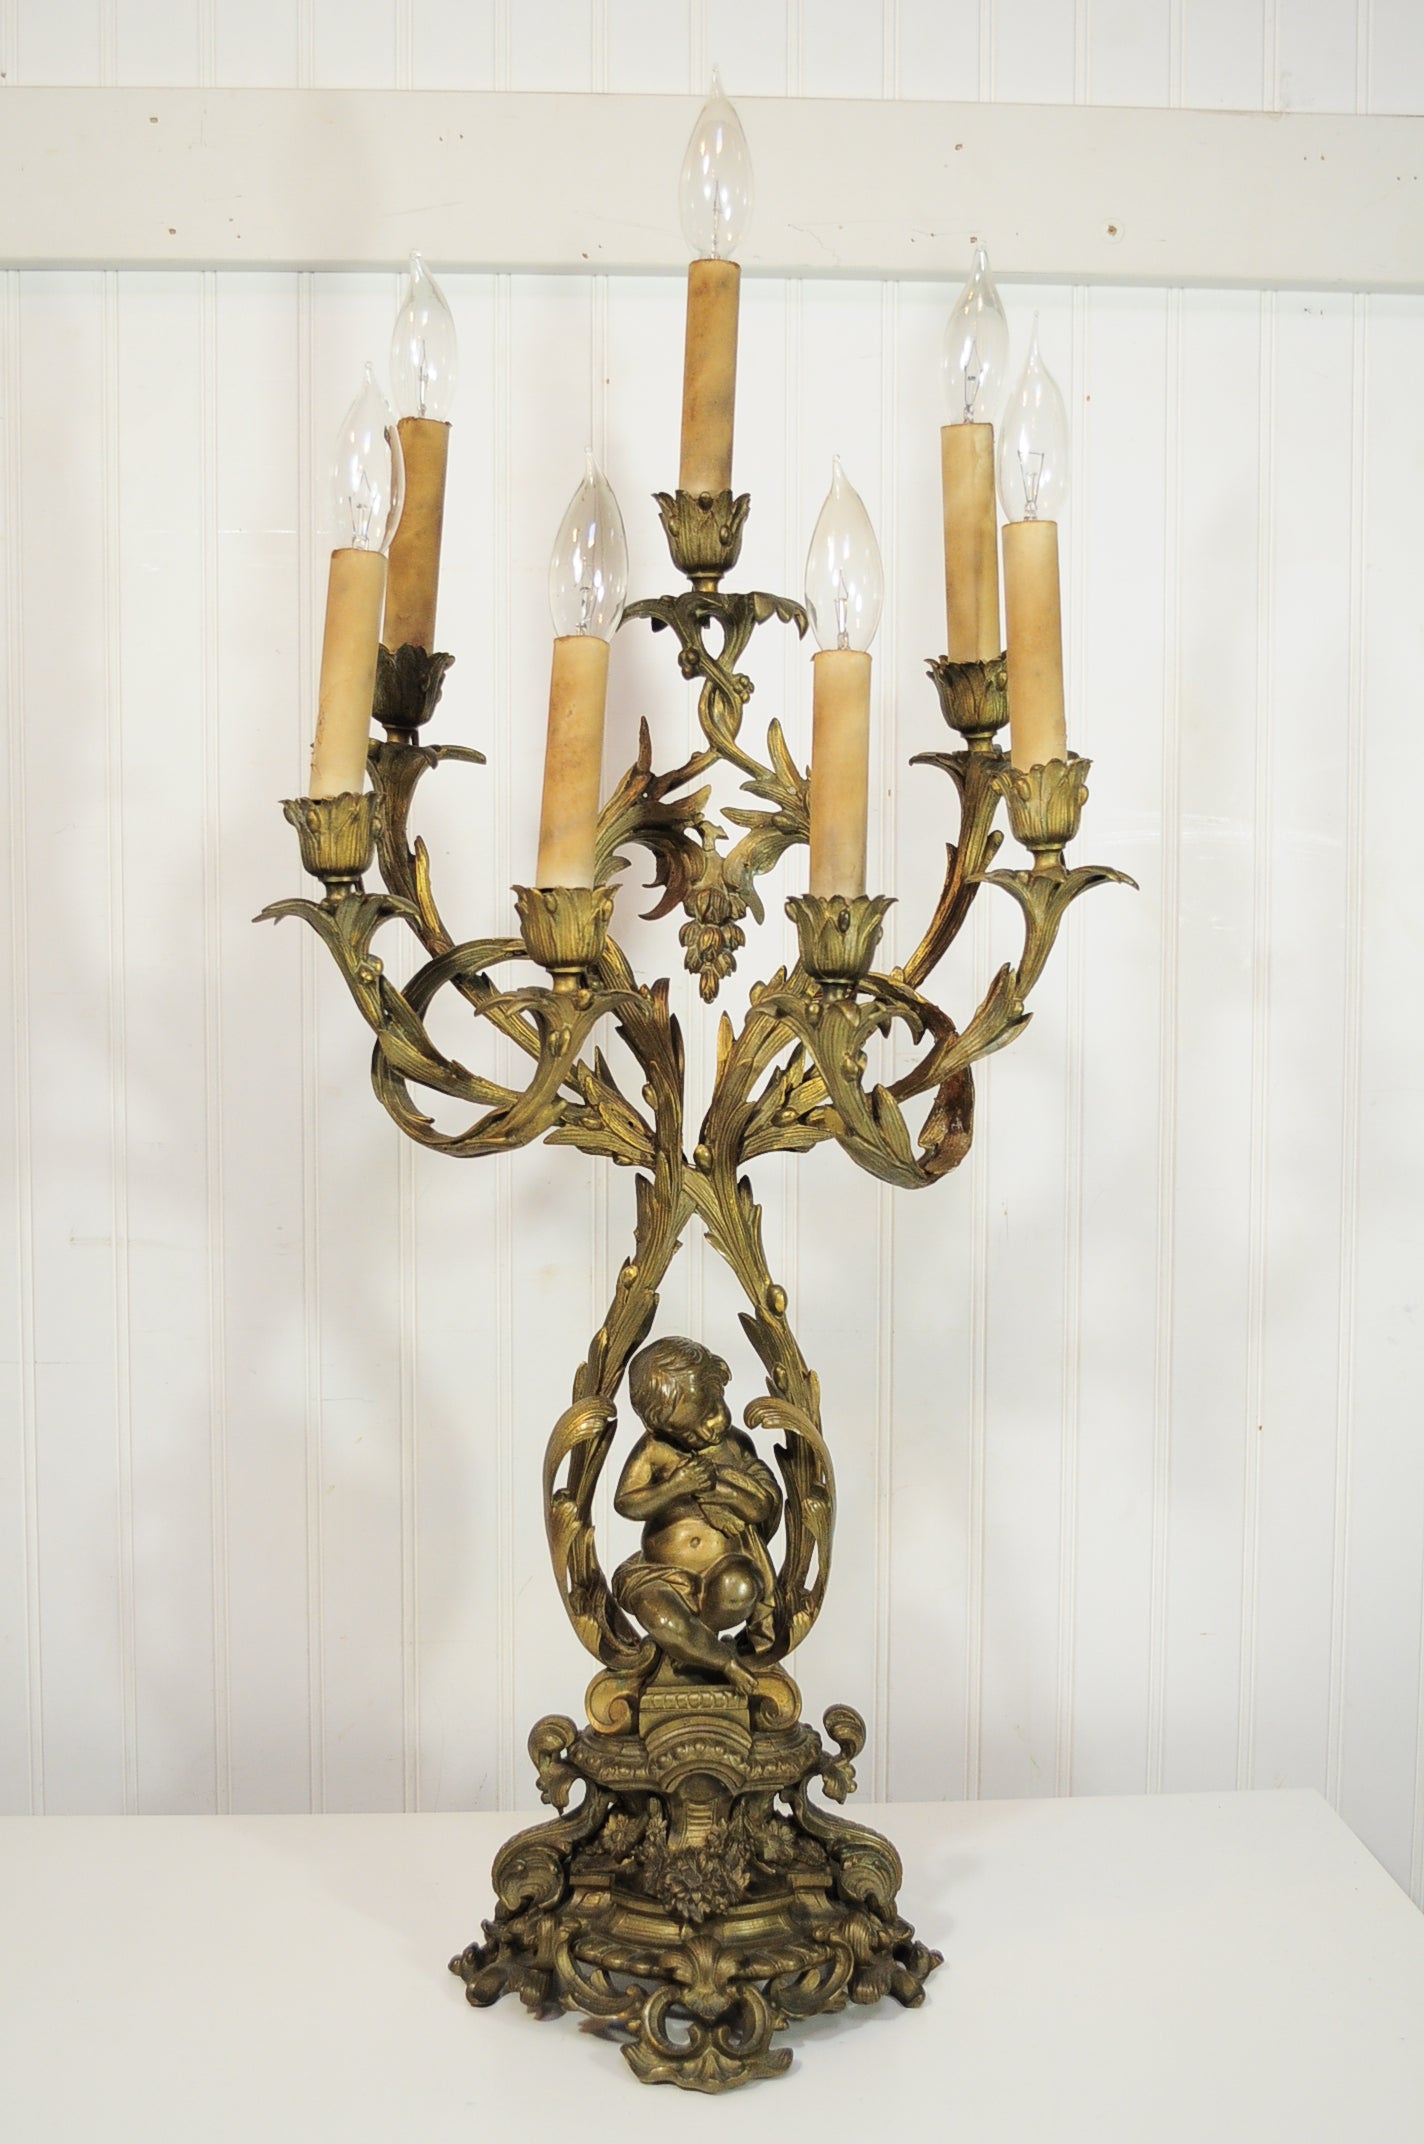 Lampe de bureau en bronze ornée d'un candélabre en forme de chérubin et d'oiseau de style rococo français du 19e siècle